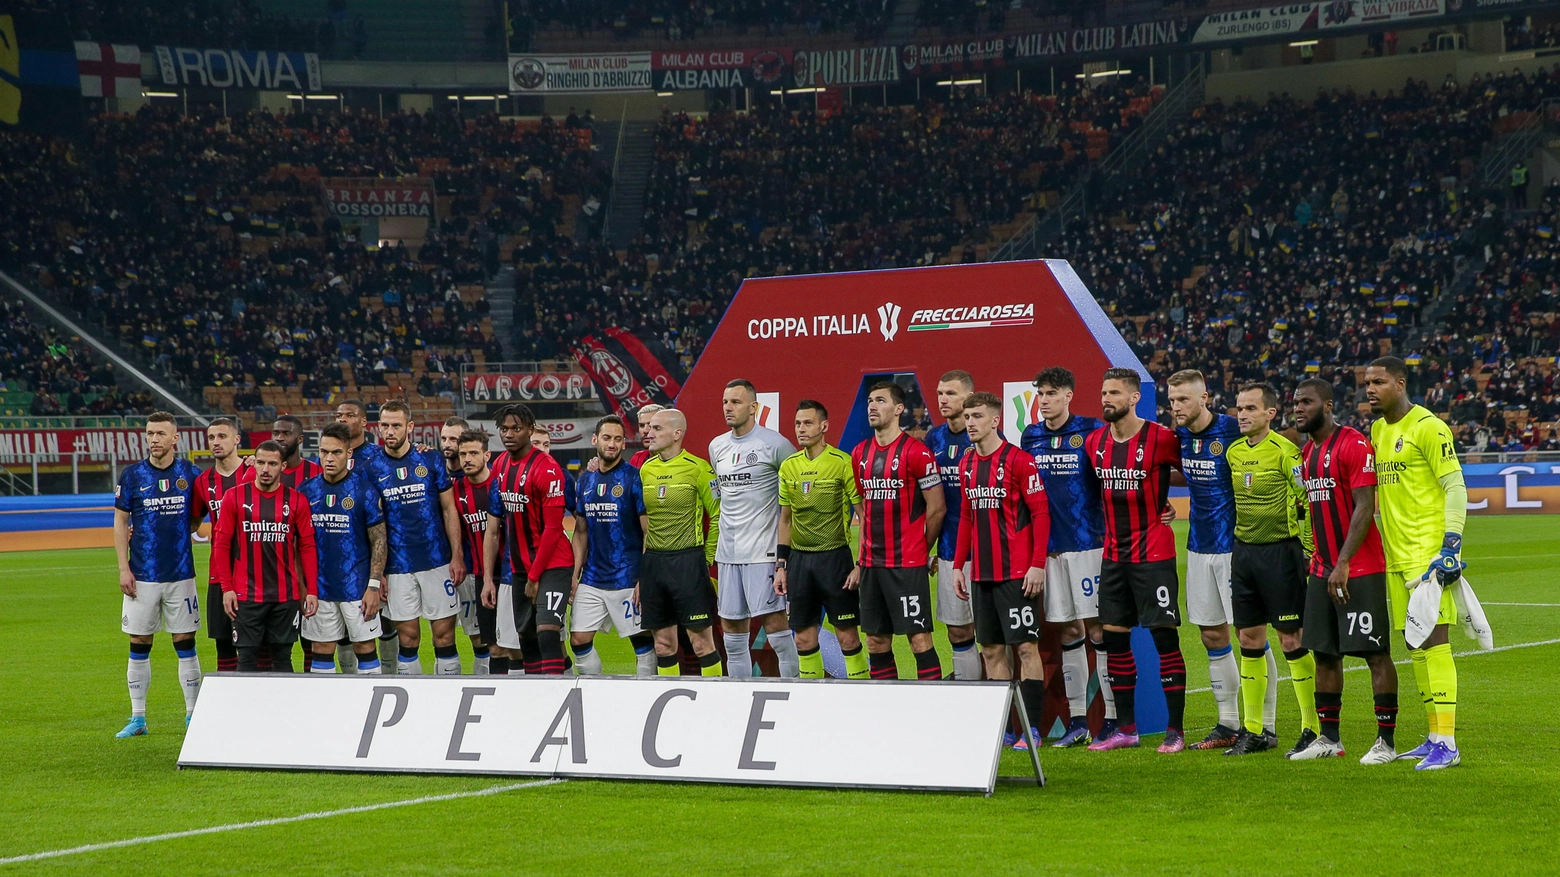 San Siro per la pace con il derby Milan-Inter